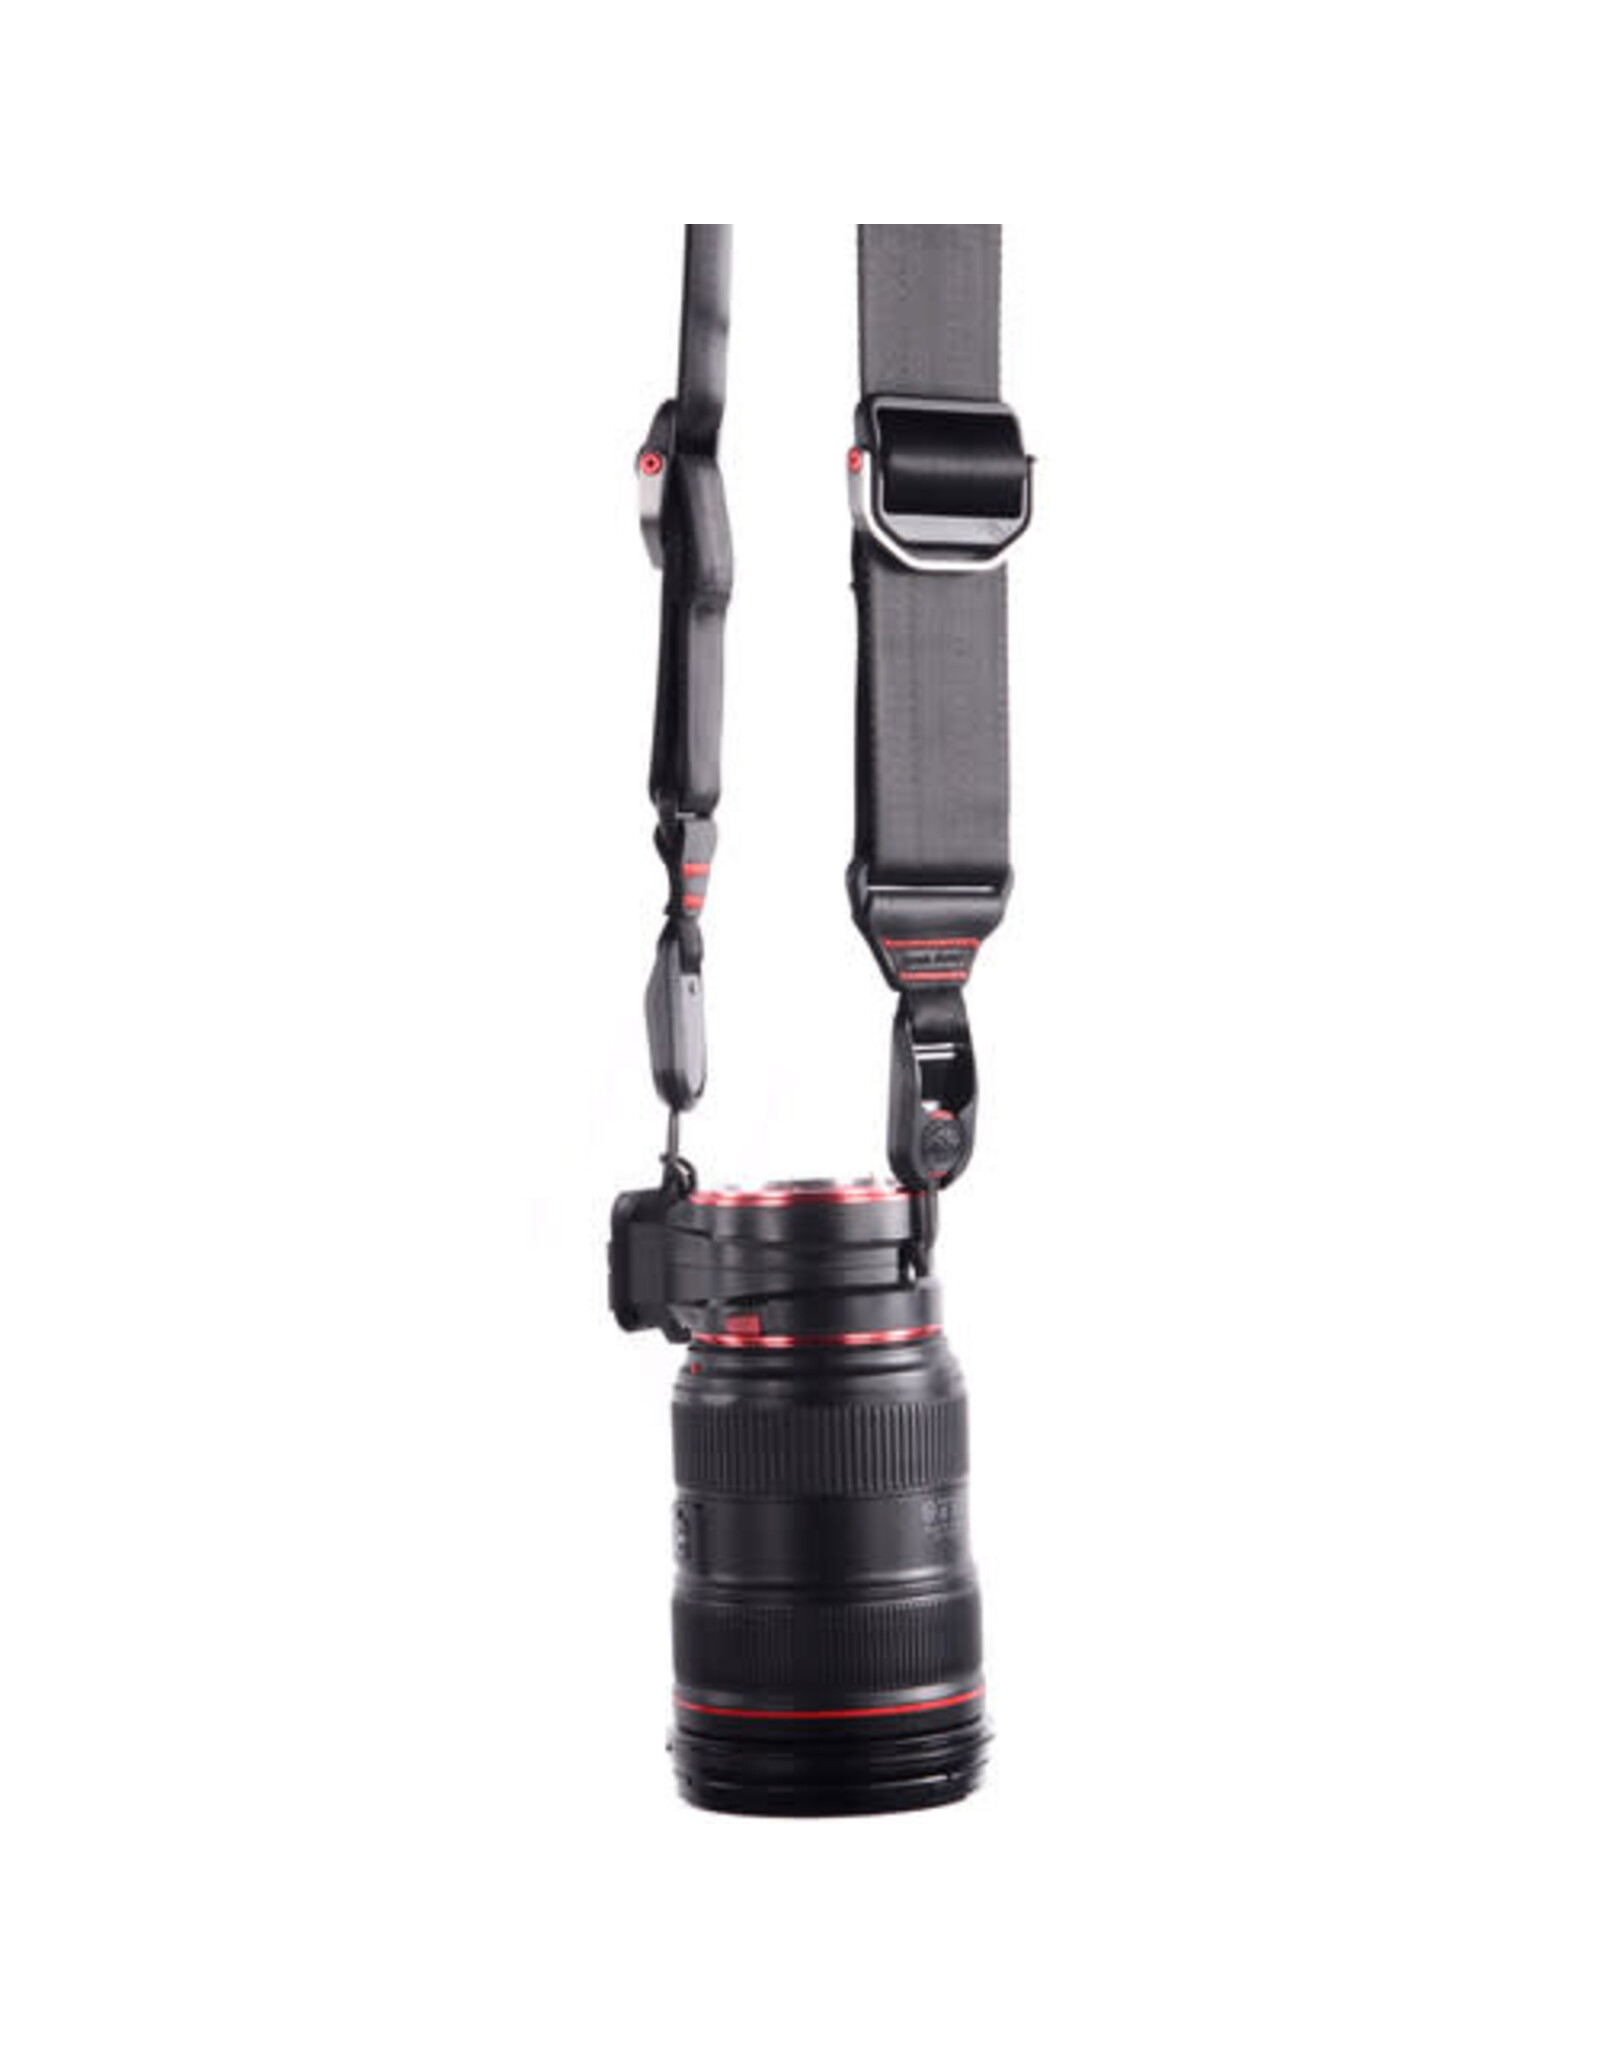 Peak Design Canon EF Lens Changing Kit Adapter v2 (Specify Mount)